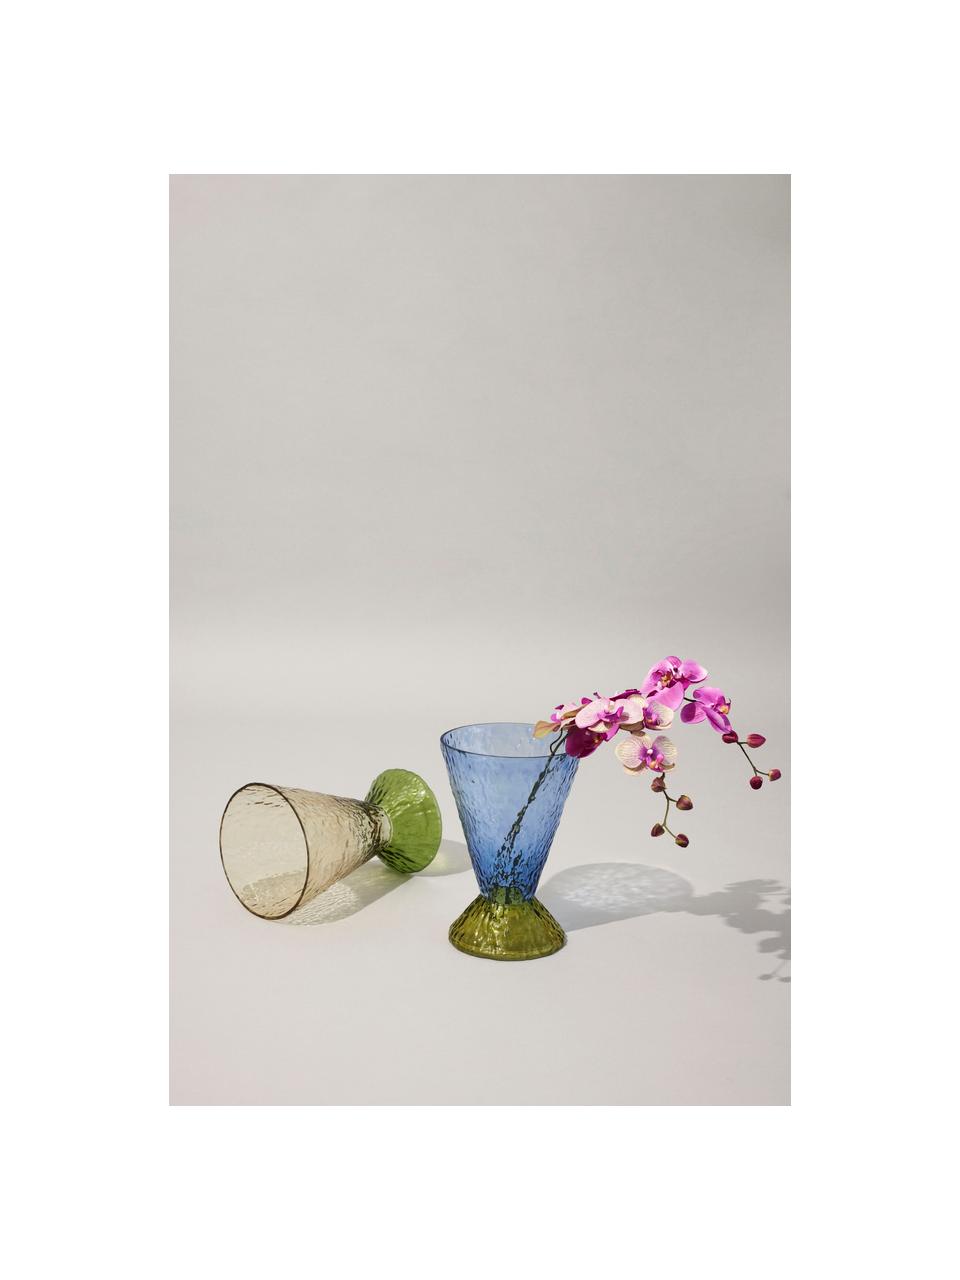 Ręcznie wykonany wazon Abyss, W 29 cm, Szkło, Odcienie zielonego, Ø 20 x W 29 cm